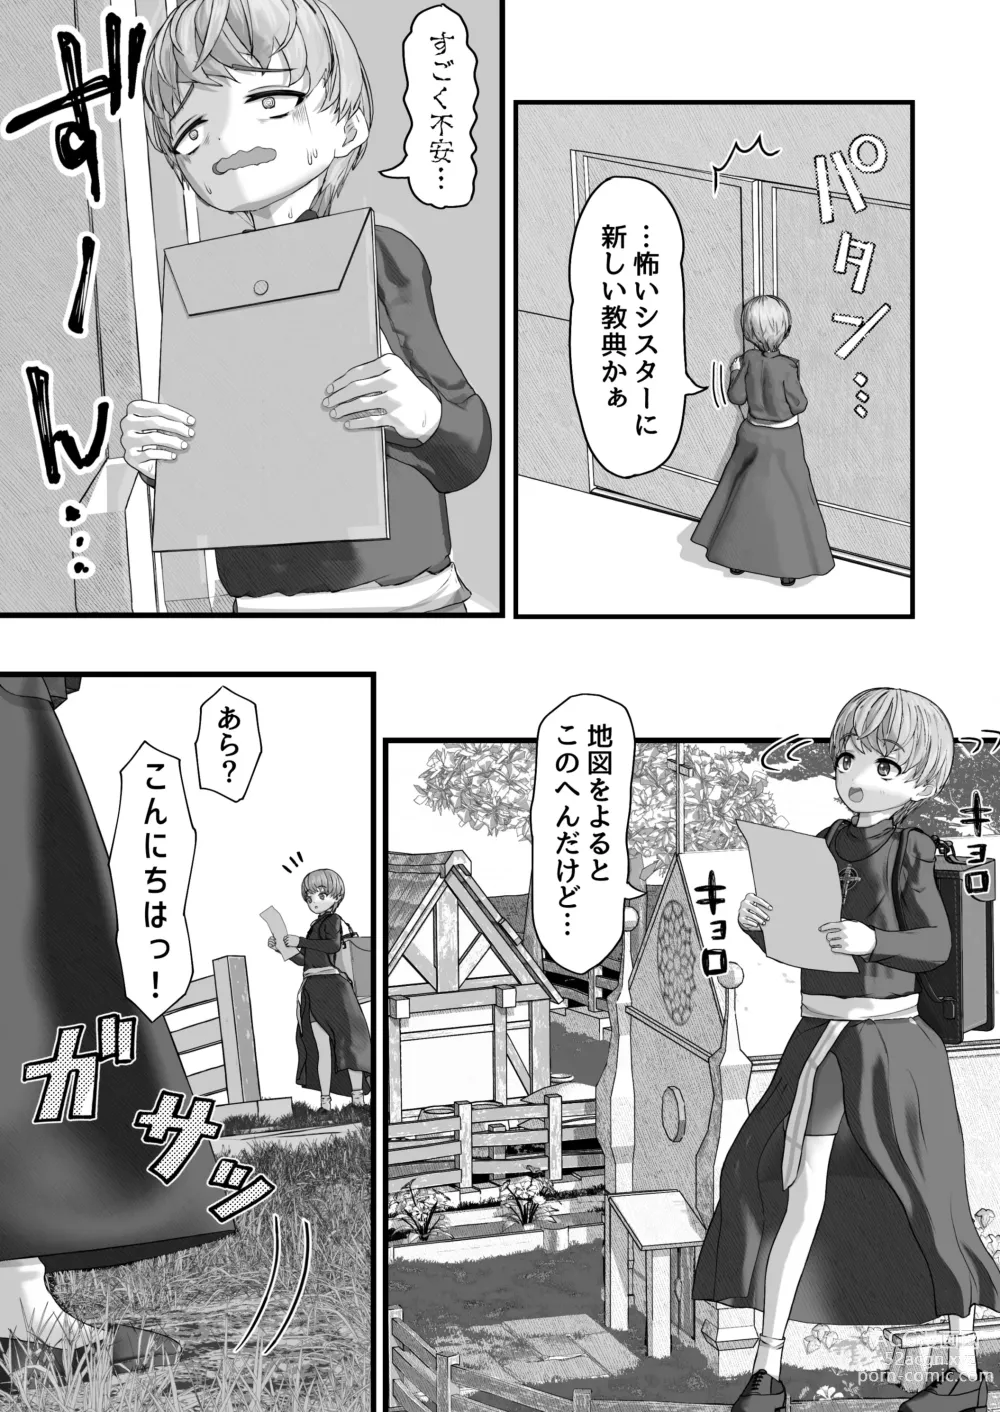 Page 5 of doujinshi Fu Honidesuga Osewa ni Natteiru Shisutā o Pantsu no ue kara ijirimasu